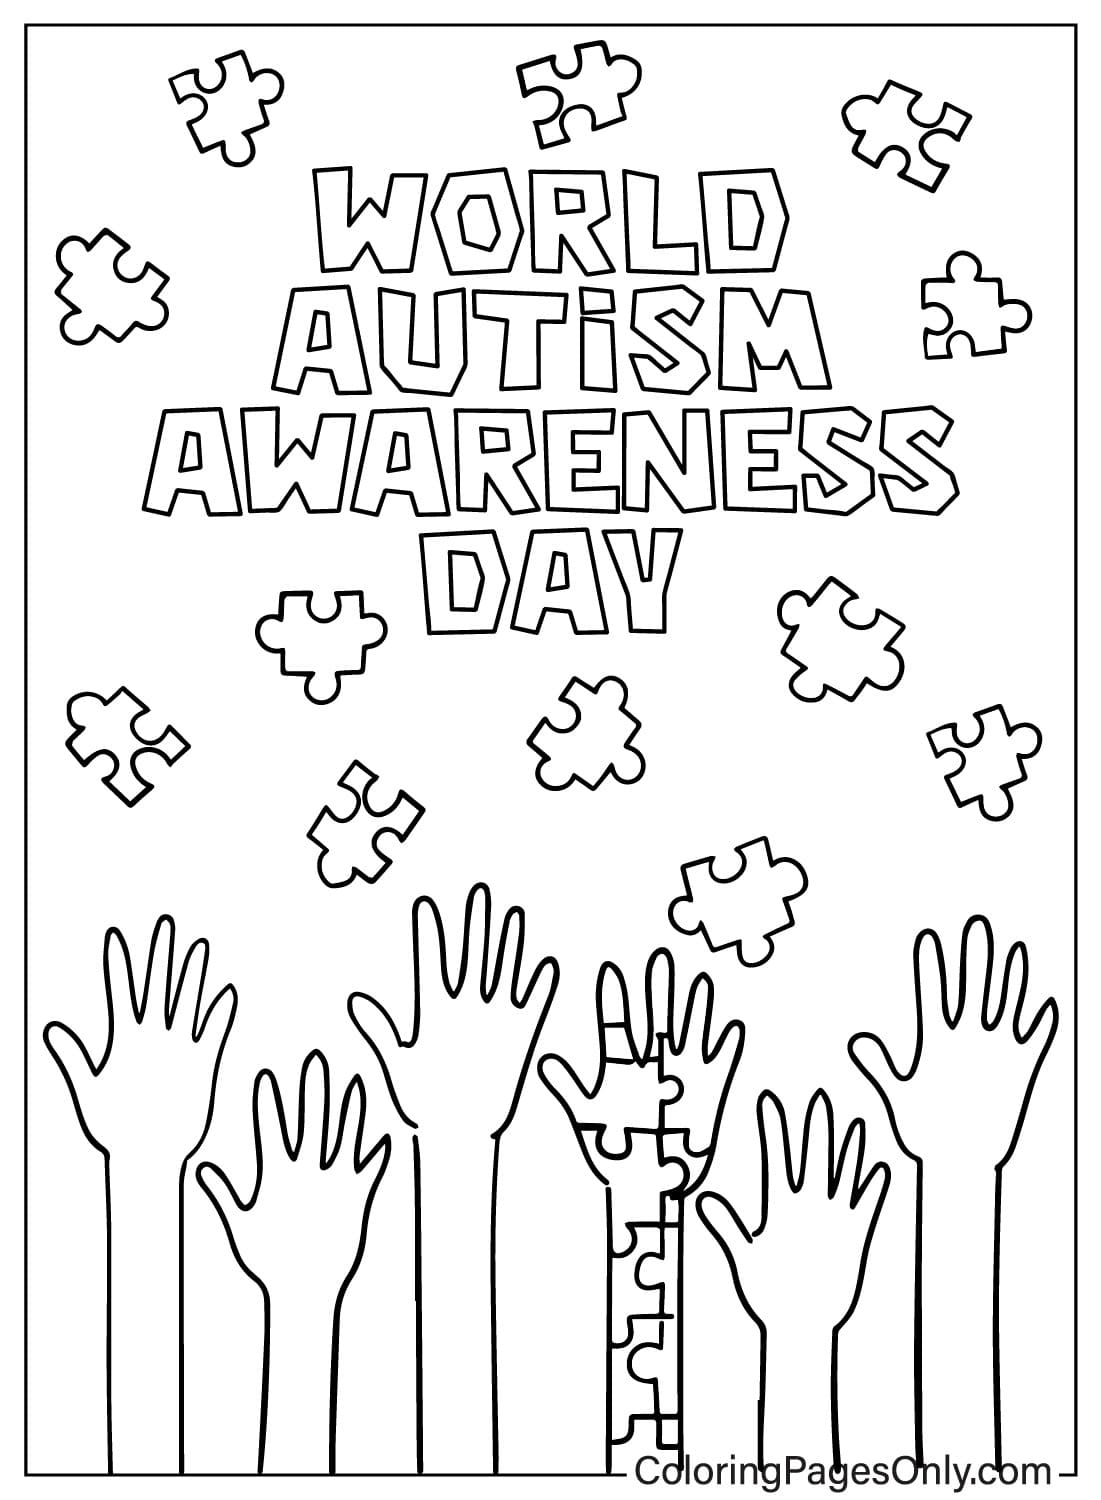 صفحة تلوين للتوعية بمرض التوحد JPG من اليوم العالمي للتوعية بمرض التوحد